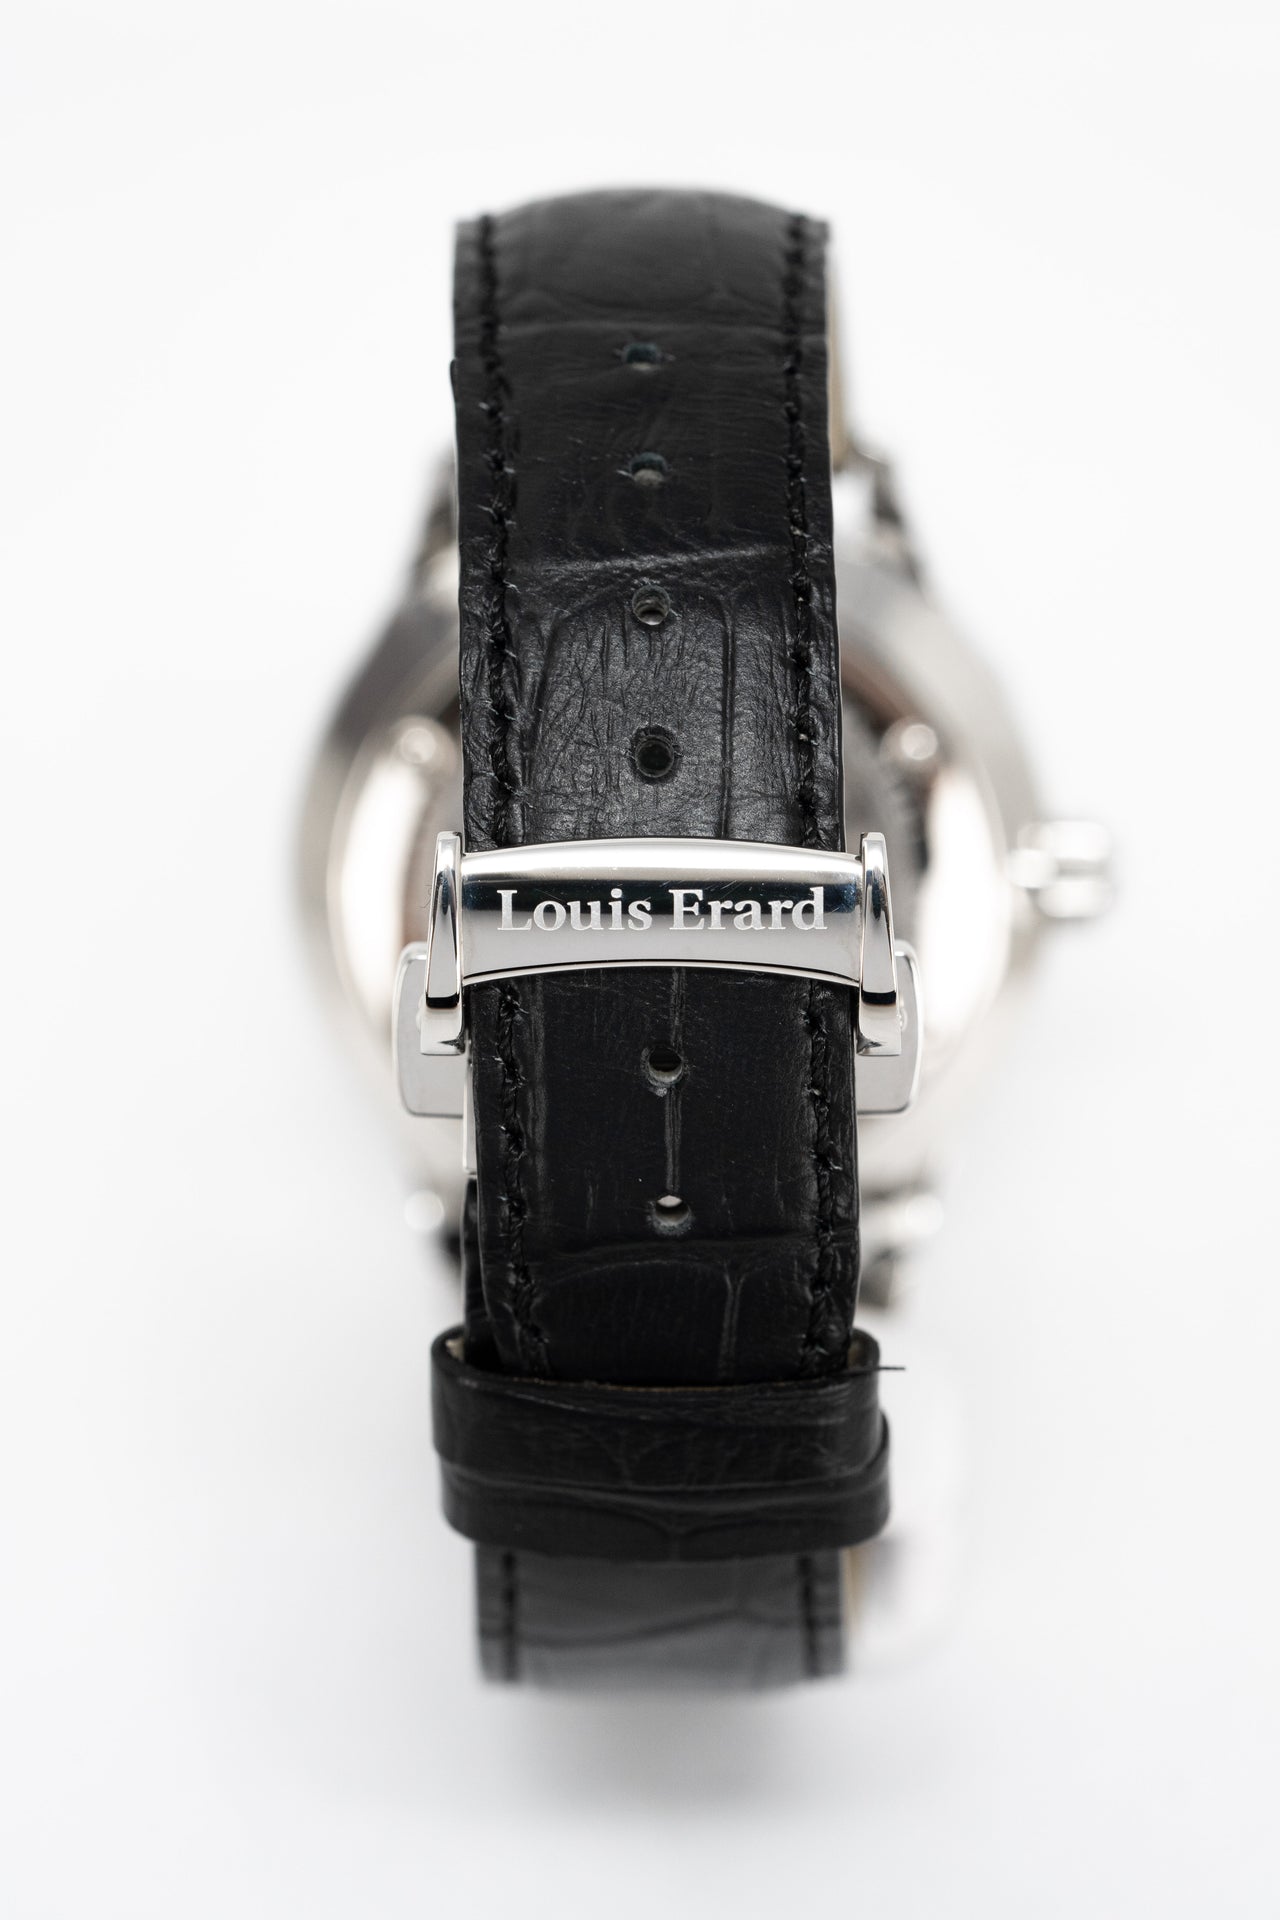 Louis Erard 1931 Chronograph Automatic White Dial Mens Watch 78228AS11.BDC55